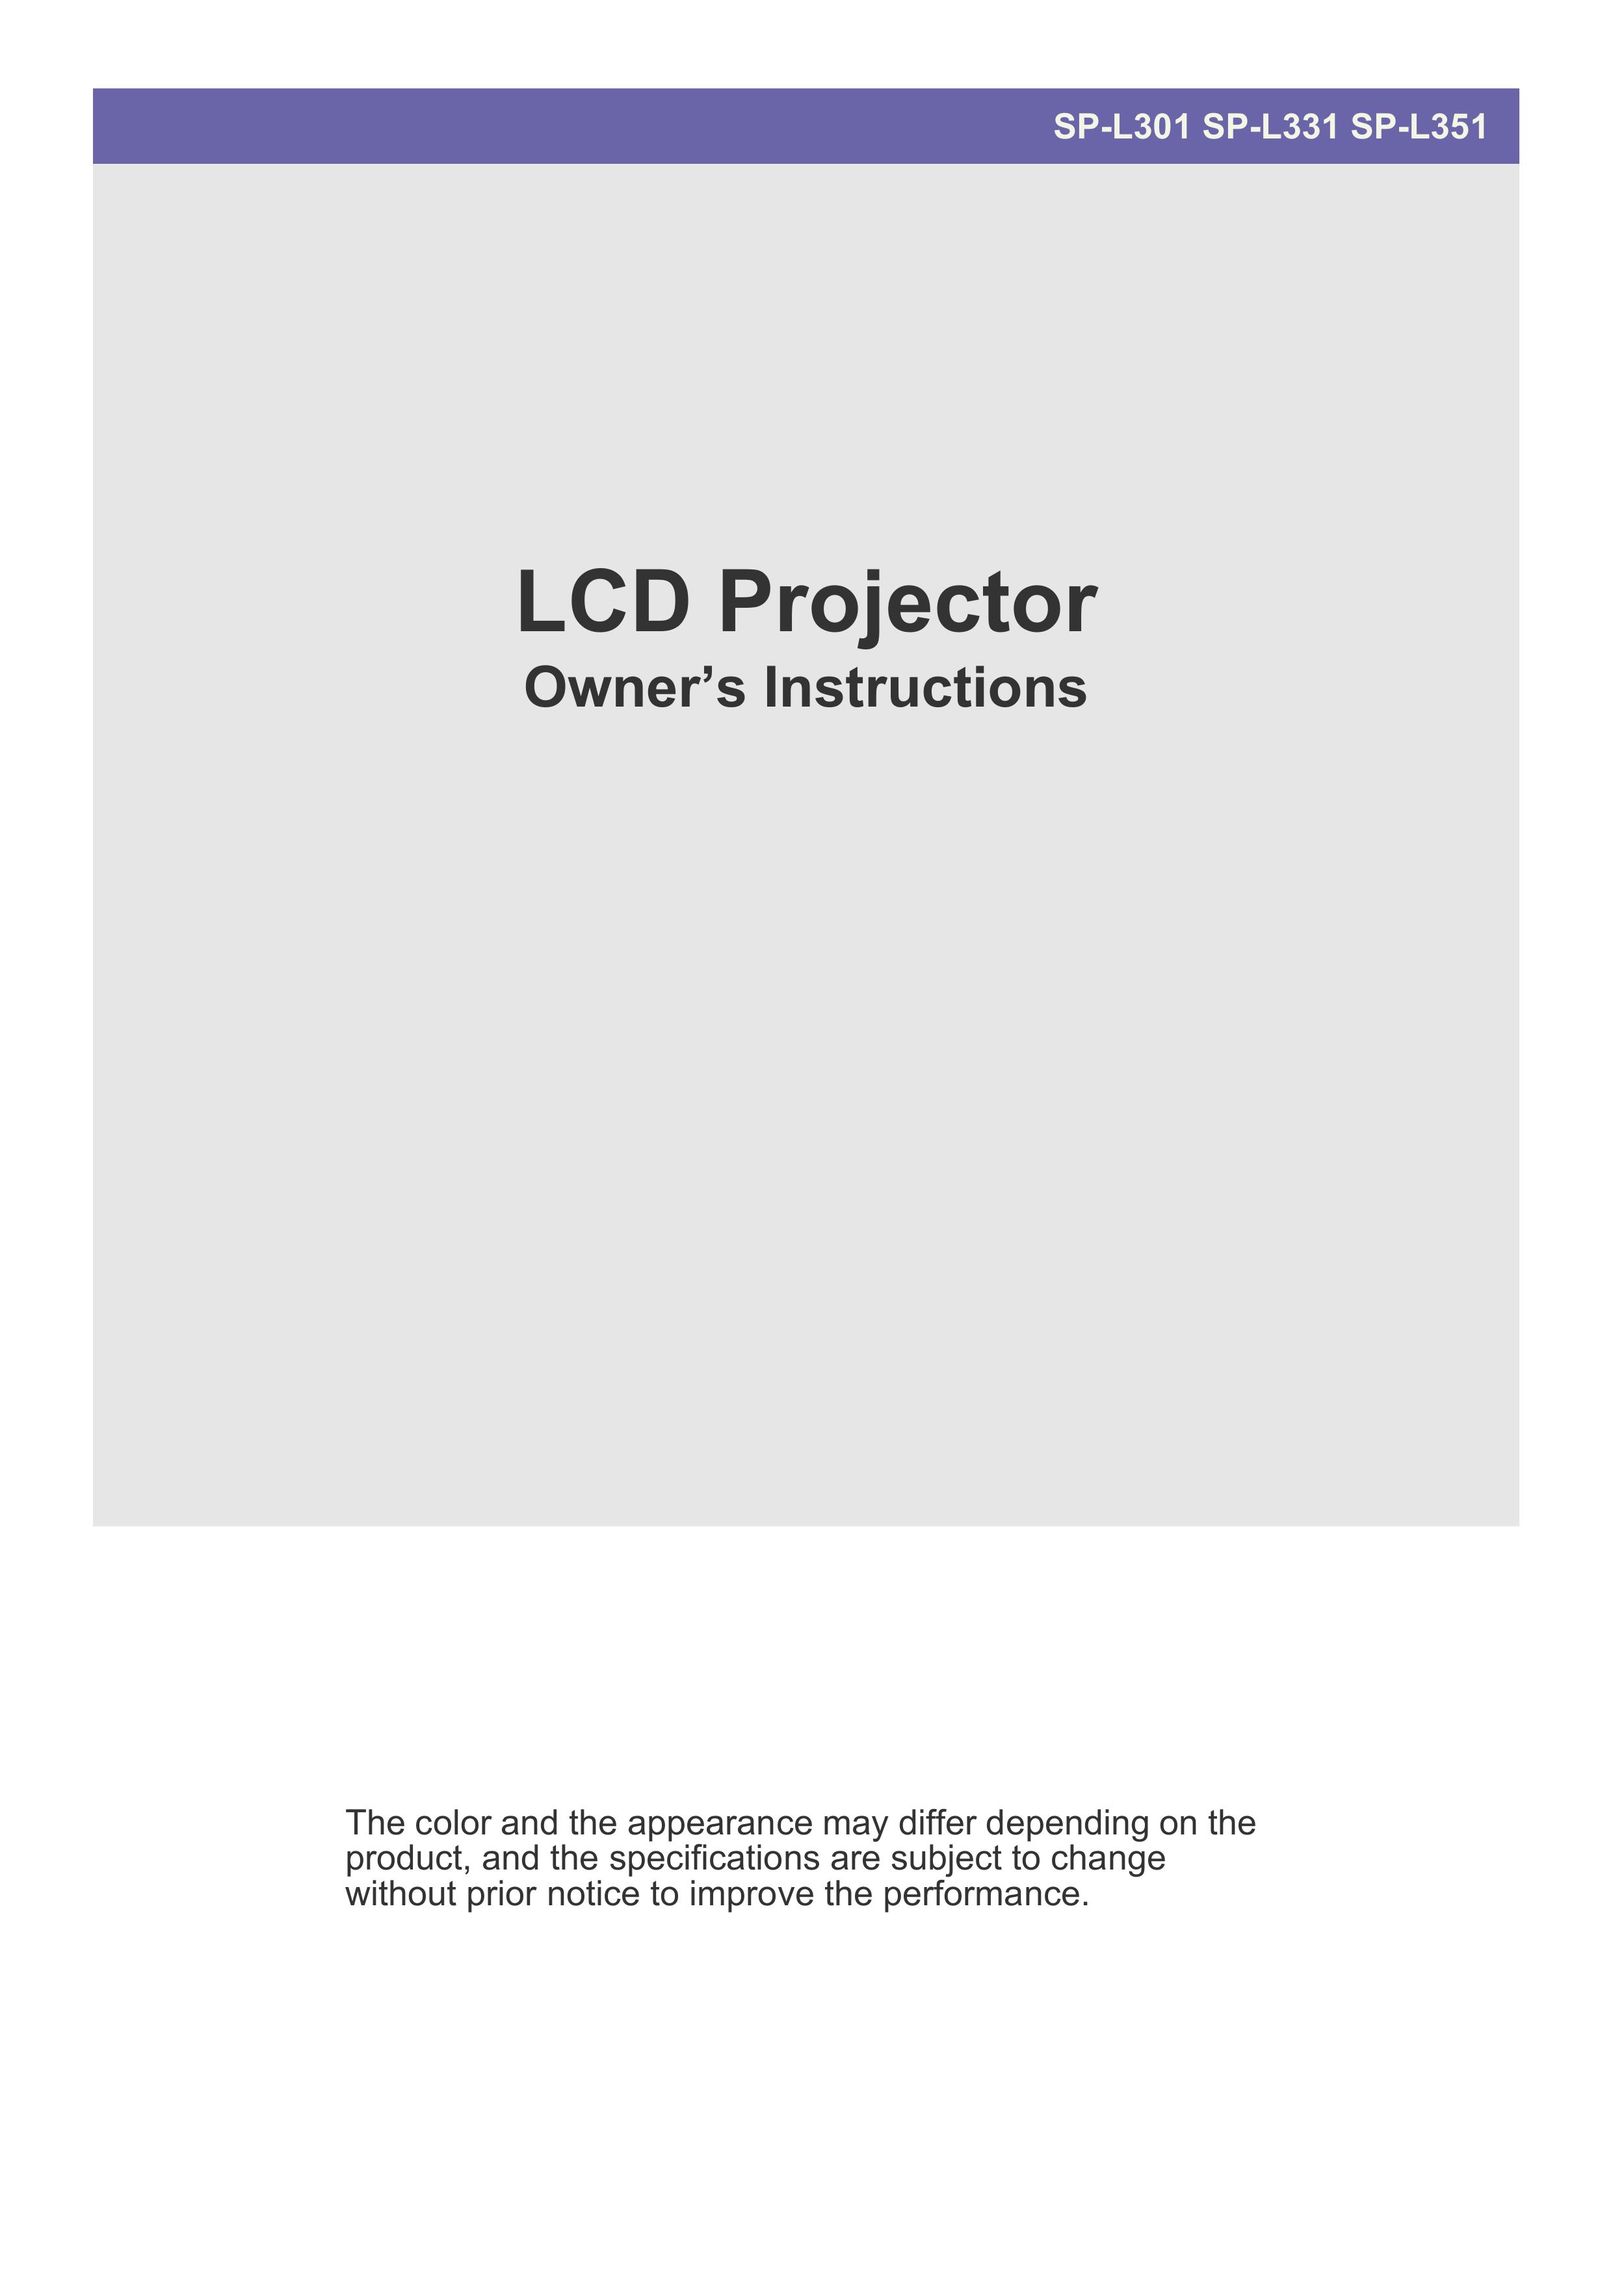 Samsung SP-L351 Projector User Manual